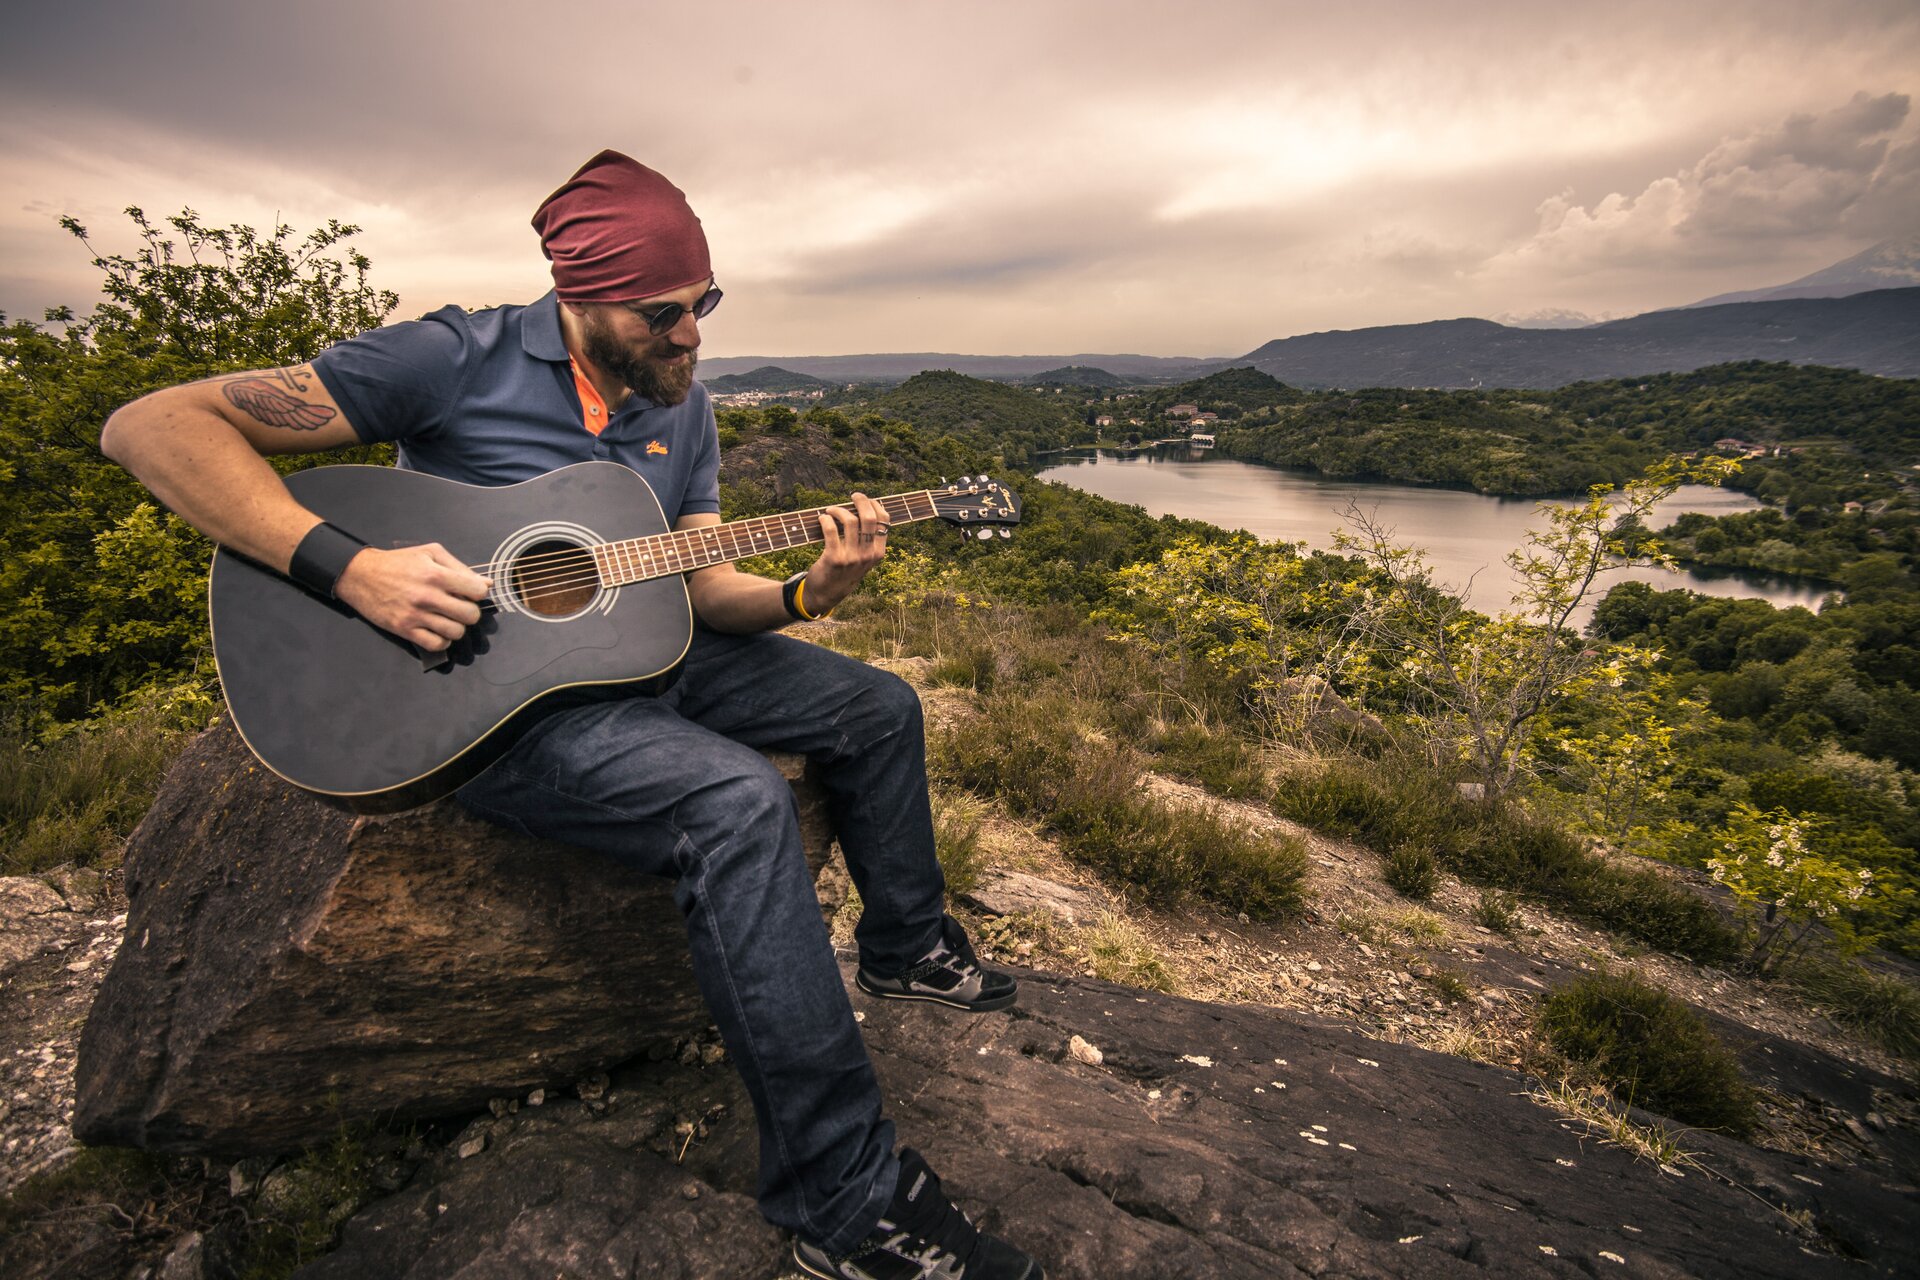 Zdjęcie przedstawia mężczyznę, który siedzi na skale i gra na gitarze. Mężczyzna ma ciemną brodę, założone okulary przeciwsłoneczne oraz czerwoną chustę na głowie. Ubrany jest w niebieską koszulką i dżinsy. W tle znajdują się lasy, jezioro oraz pasmo górskie.